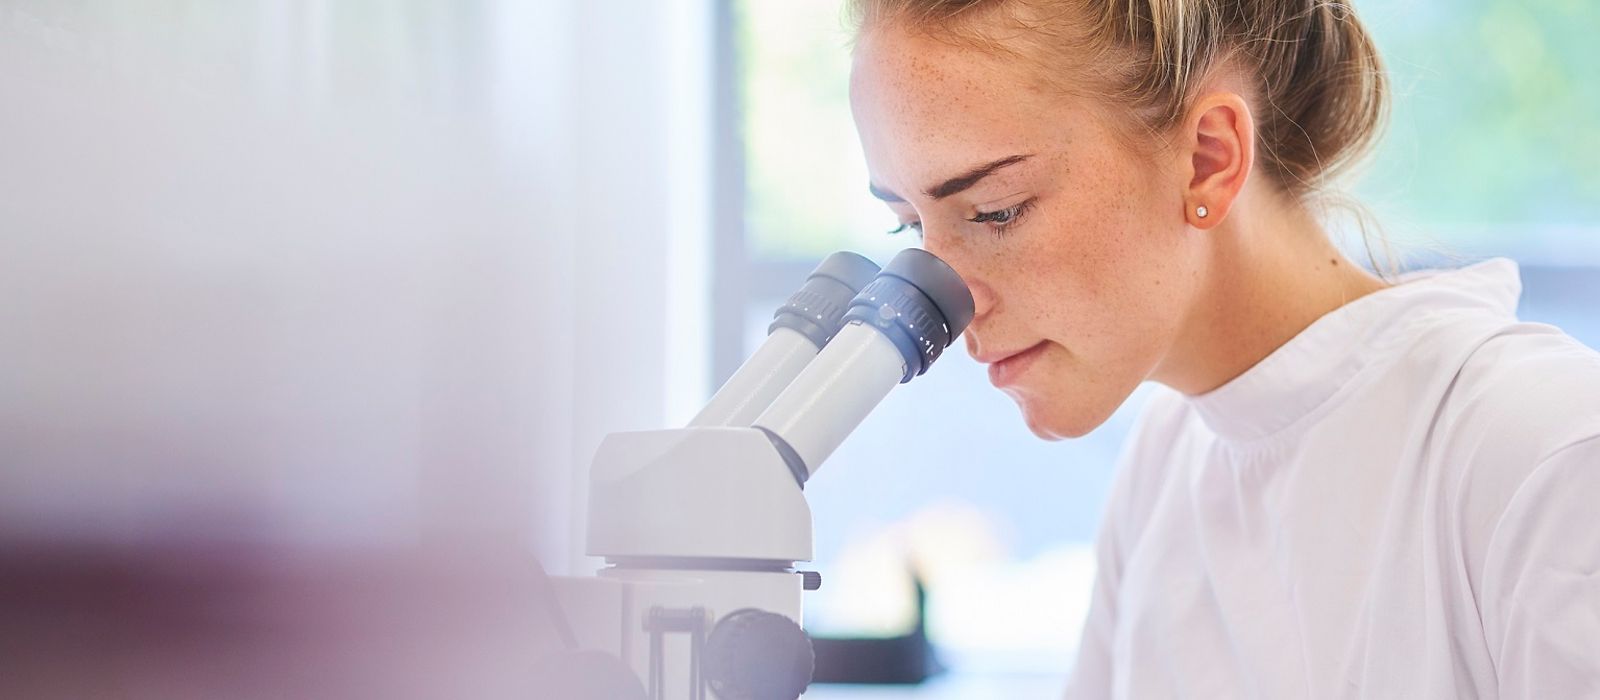 Frau im Labor, weißer Kittel, sitzt am Mikroskop